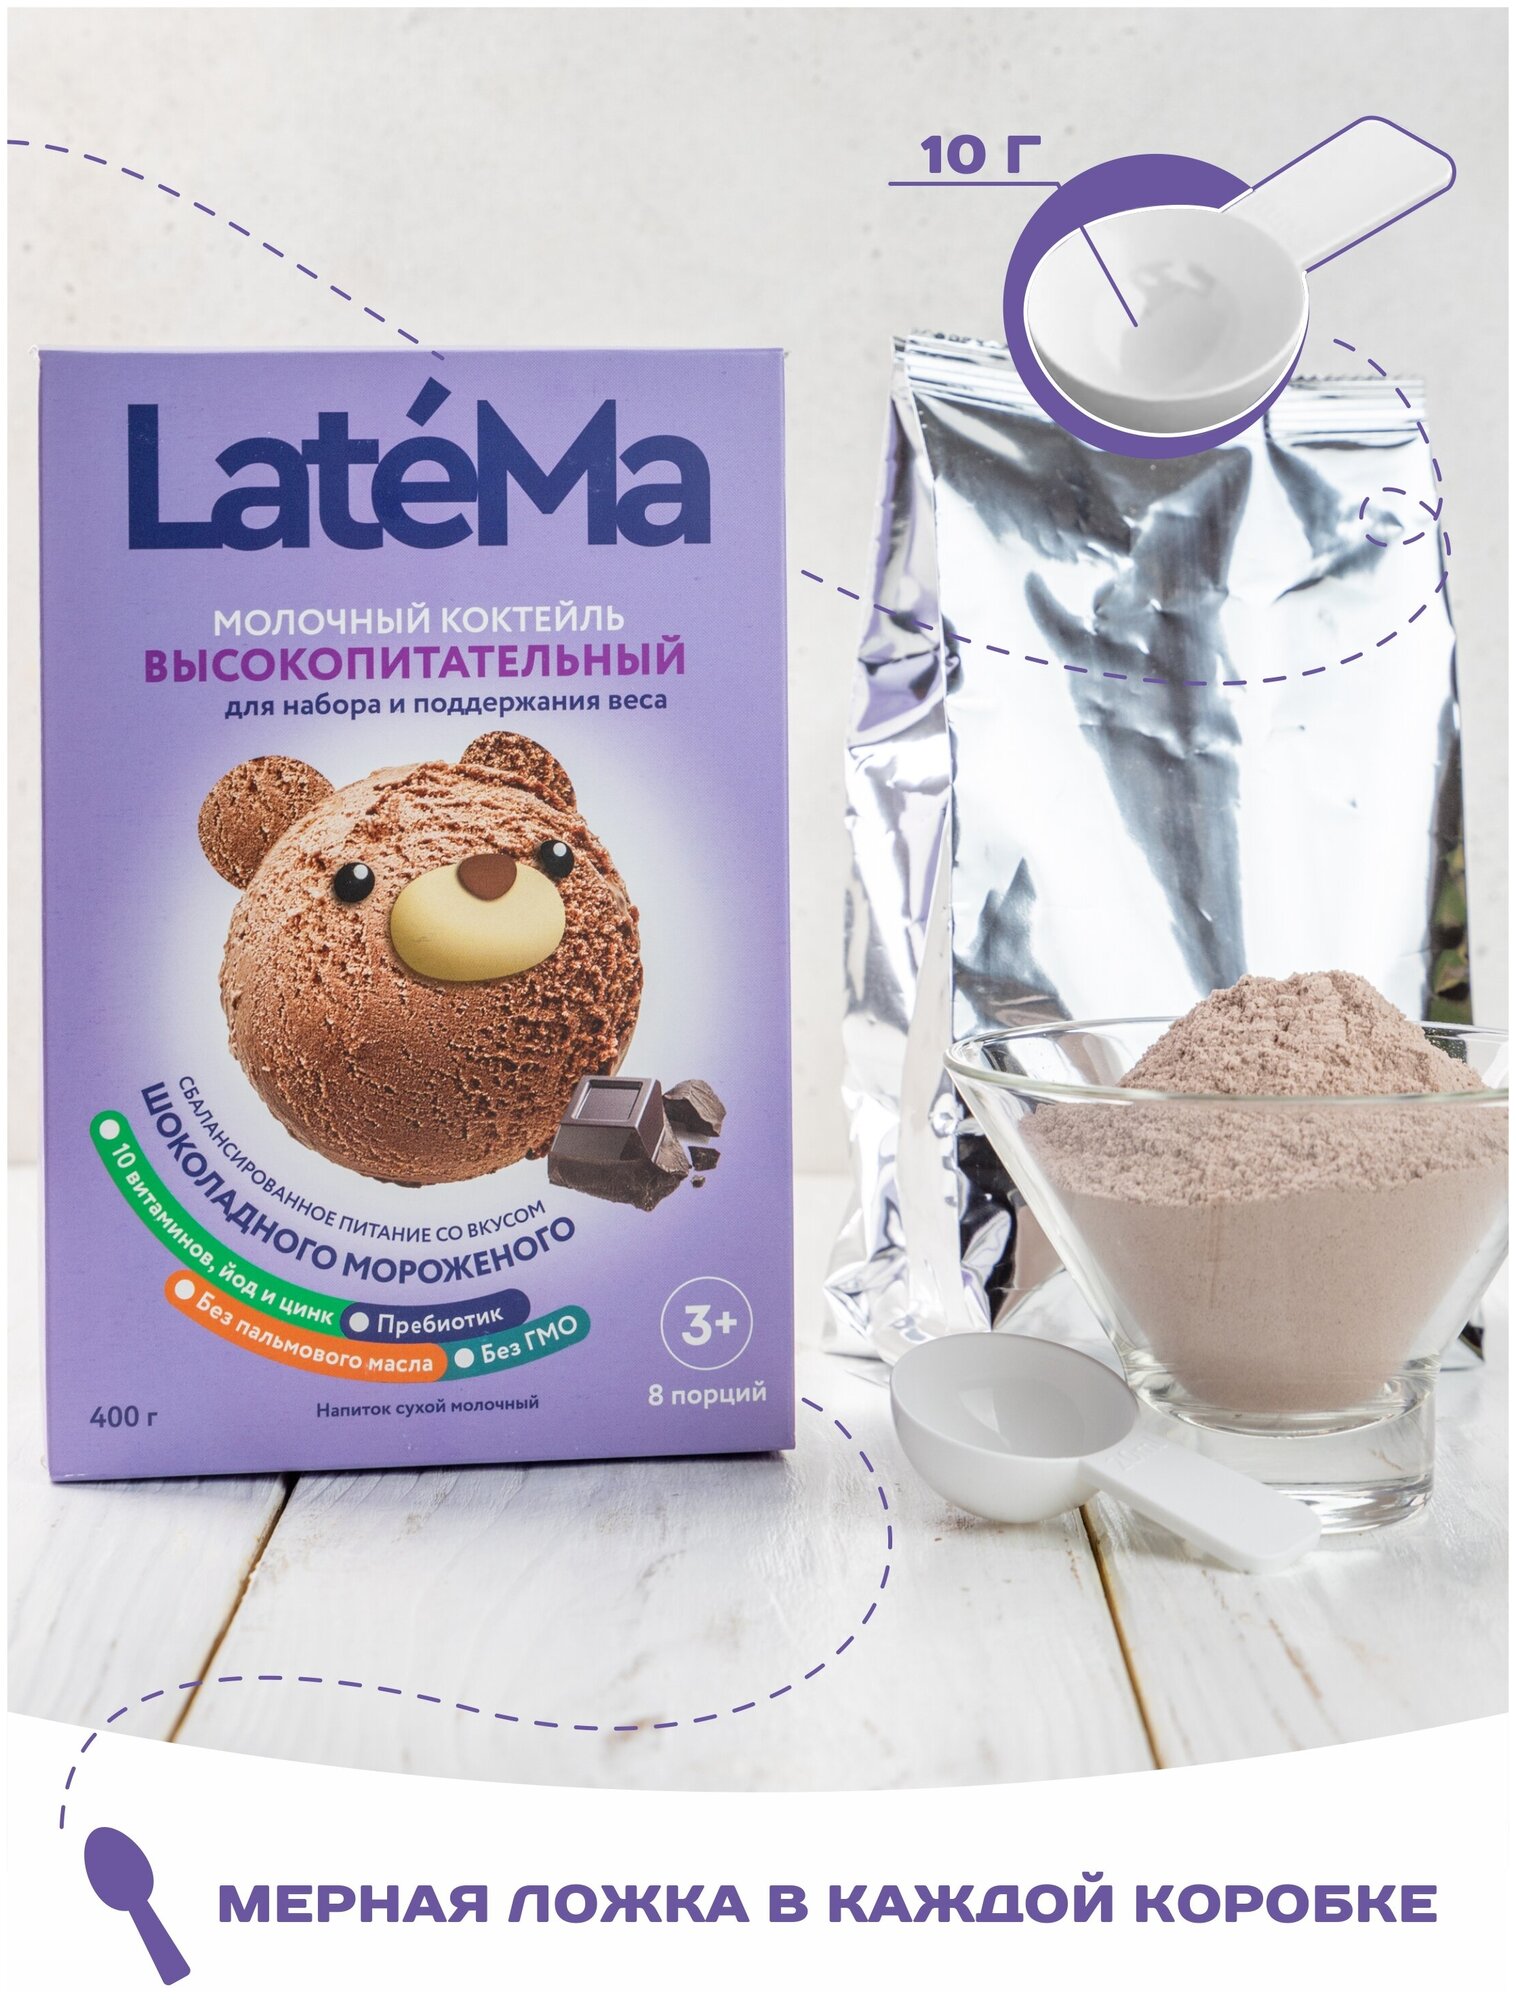 Молочная смесь для приготовления коктейля LateMa высокопитательная (для набора и поддержания веса) со вкусом шоколадного мороженого